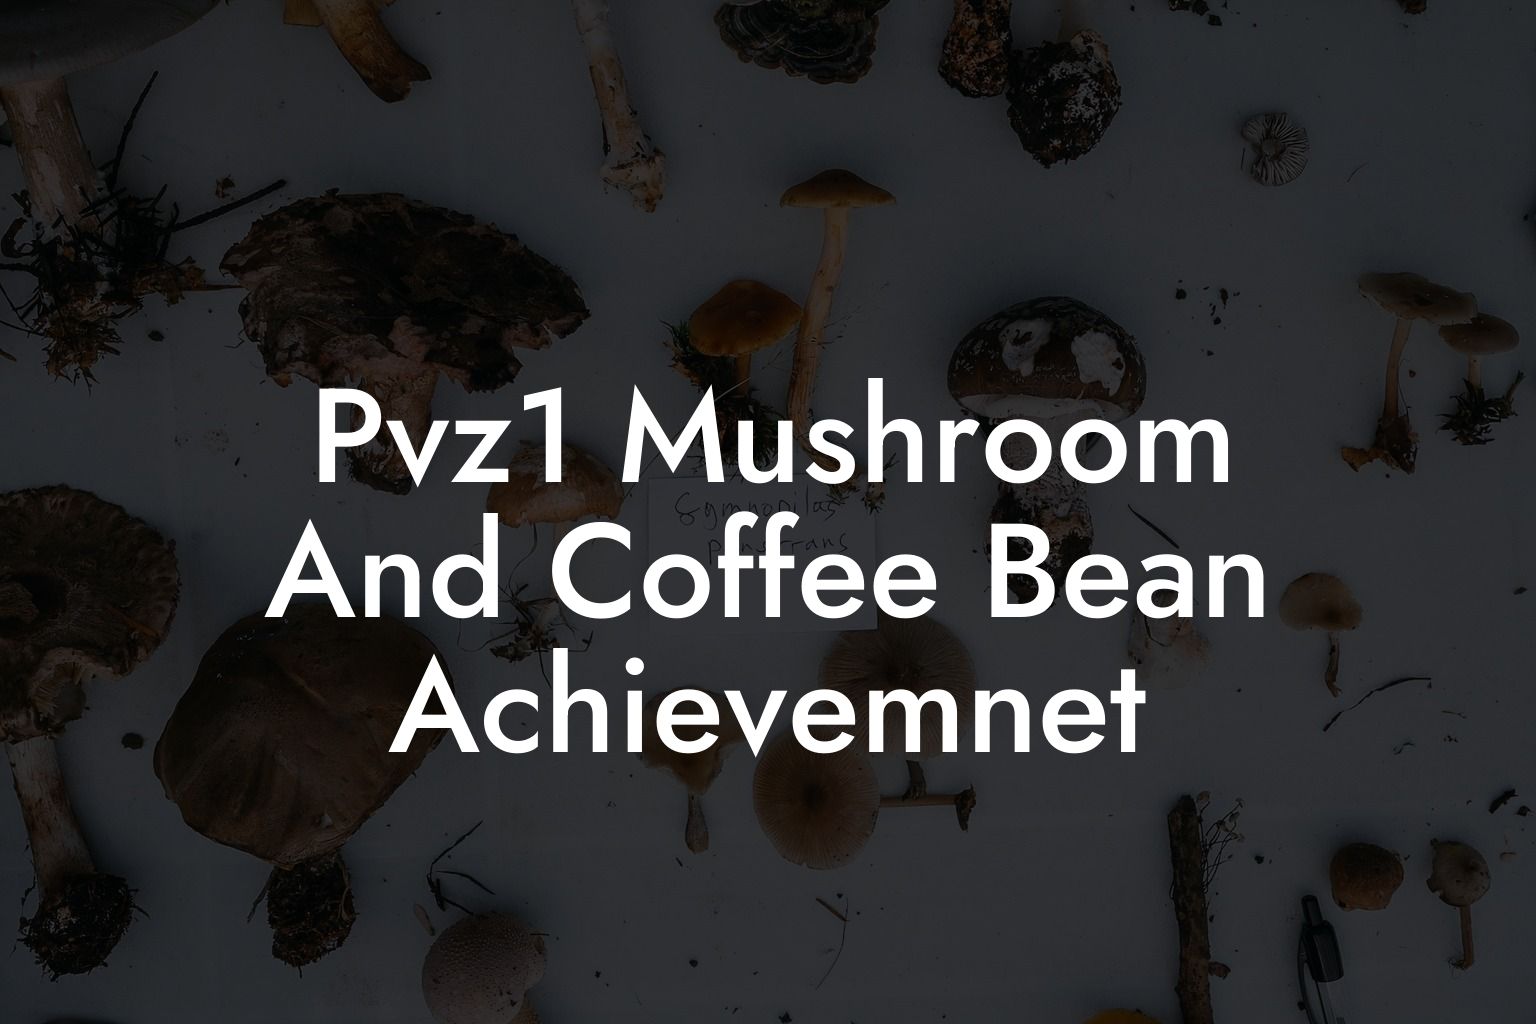 Pvz1 Mushroom And Coffee Bean Achievemnet - Mr Mushroom